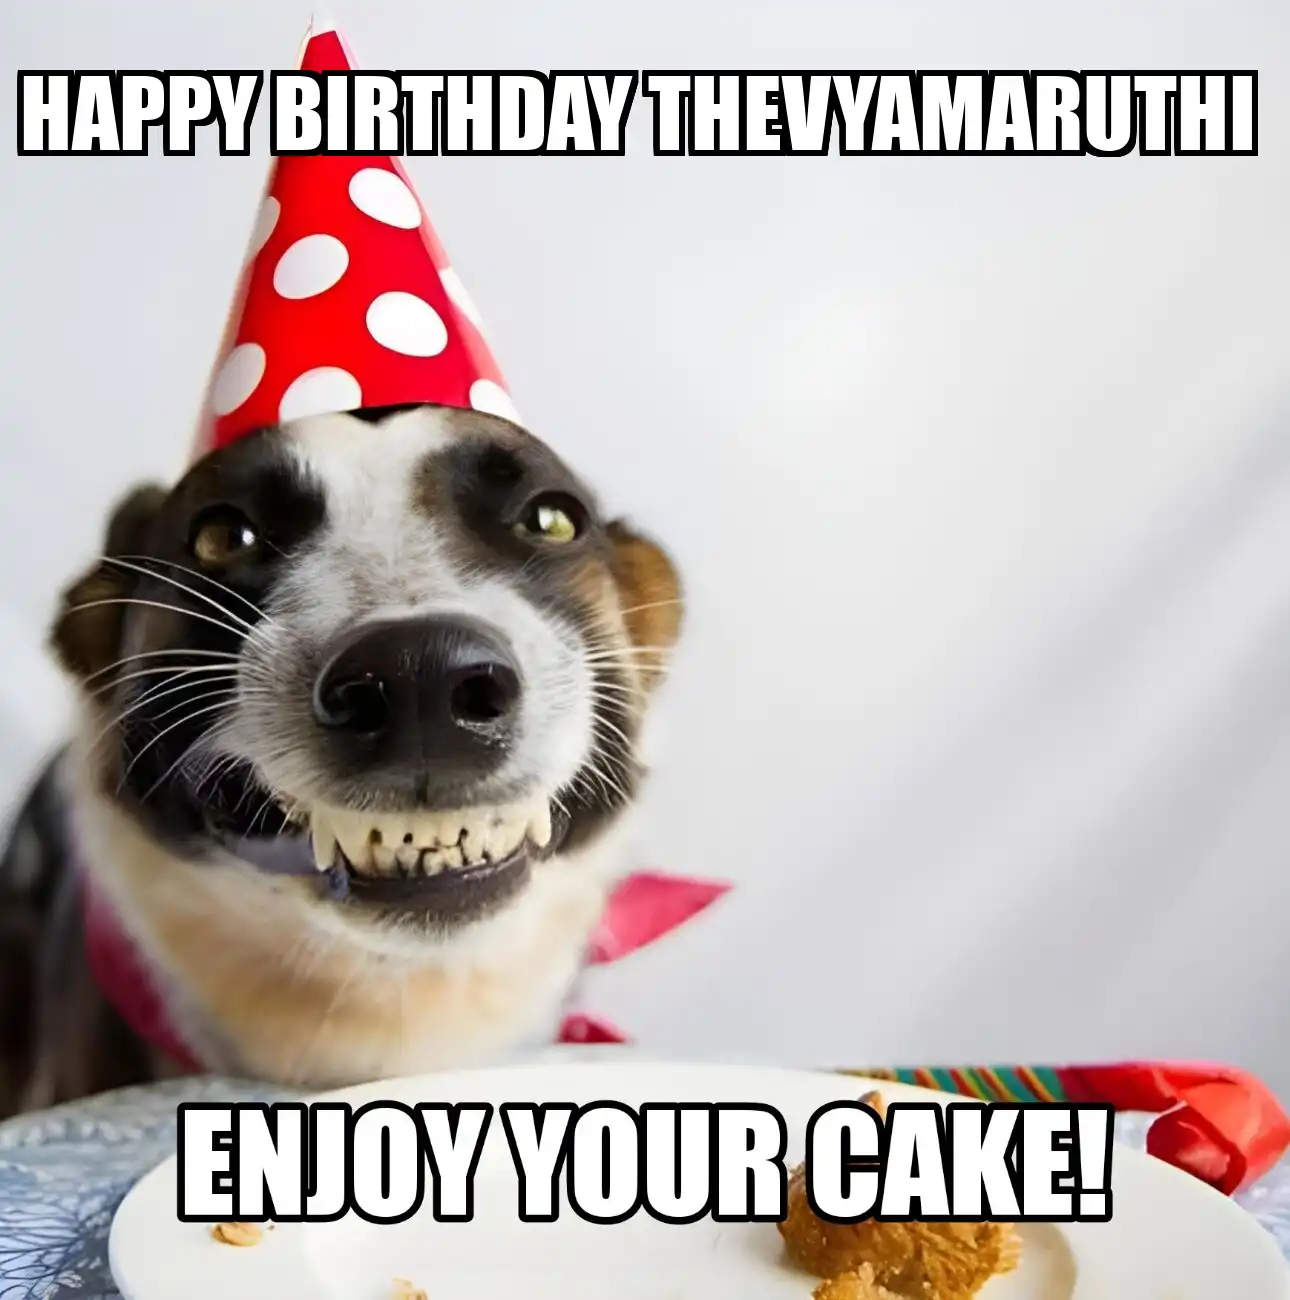 Happy Birthday Thevyamaruthi Enjoy Your Cake Dog Meme